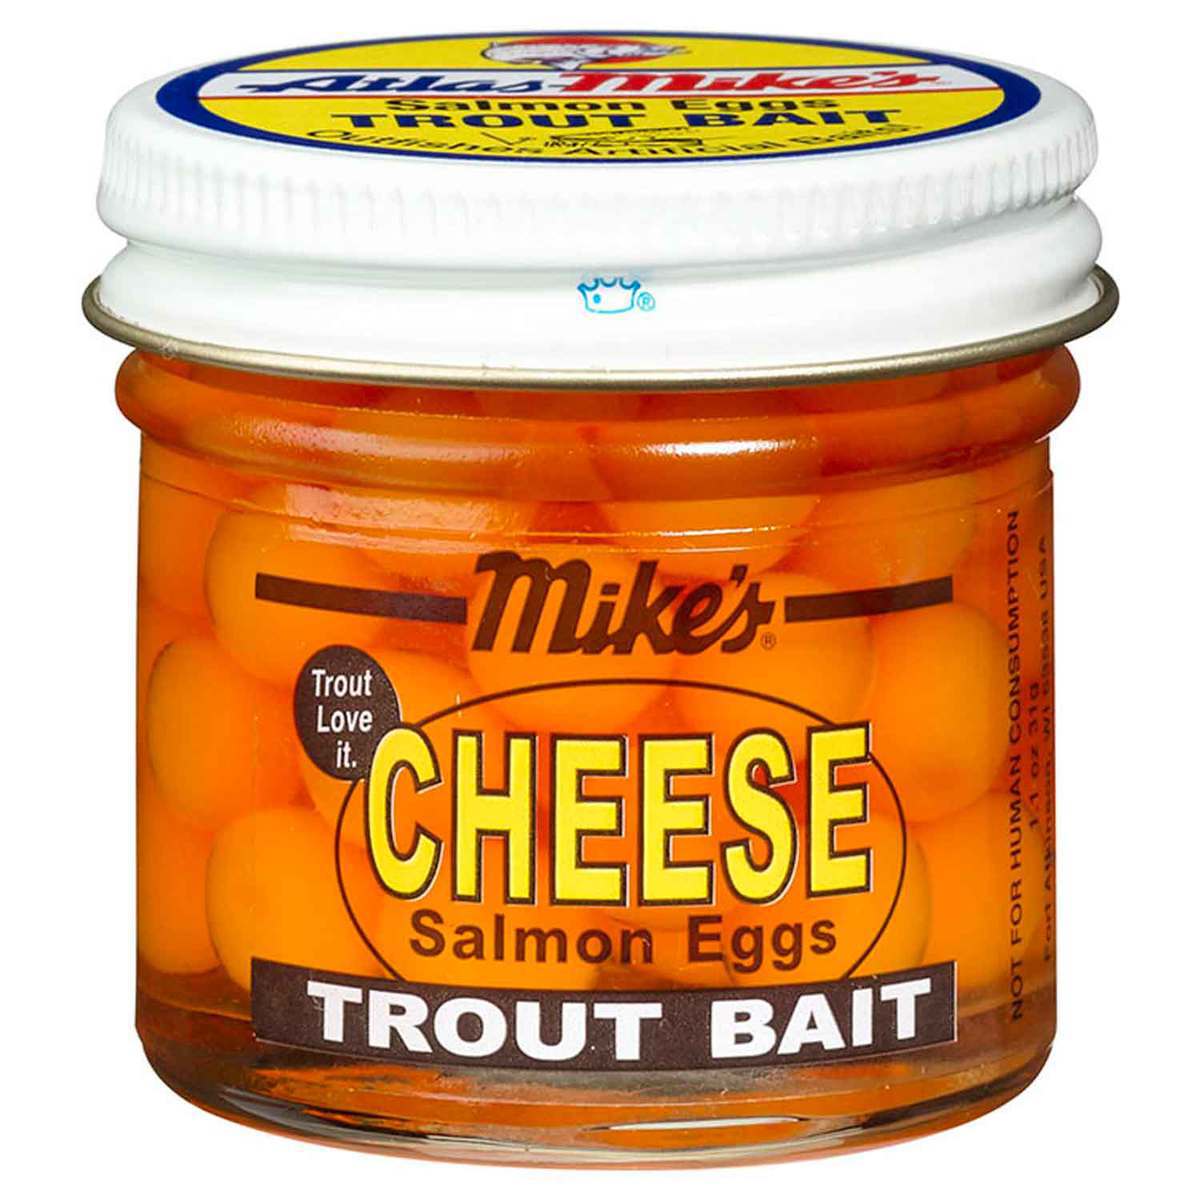 https://www.sportsmans.com/medias/atlas-mikes-salmon-eggs-trout-bait-yellow-cheese-401925-1.jpg?context=bWFzdGVyfGltYWdlc3wxMTQ3NzZ8aW1hZ2UvanBlZ3xhVzFoWjJWekwyZzVOQzlvTm1Jdk9UUXhORFkwT0RZeU56SXpNQzVxY0djfGFjNTYzOGIwNzlhNDIwYjJmMzA2NDlmMDZhYzAzY2RkMzUzYjY1ZDQ0ZTAzOGFhZjY5MTRjMjE3N2FkMzVhMGM